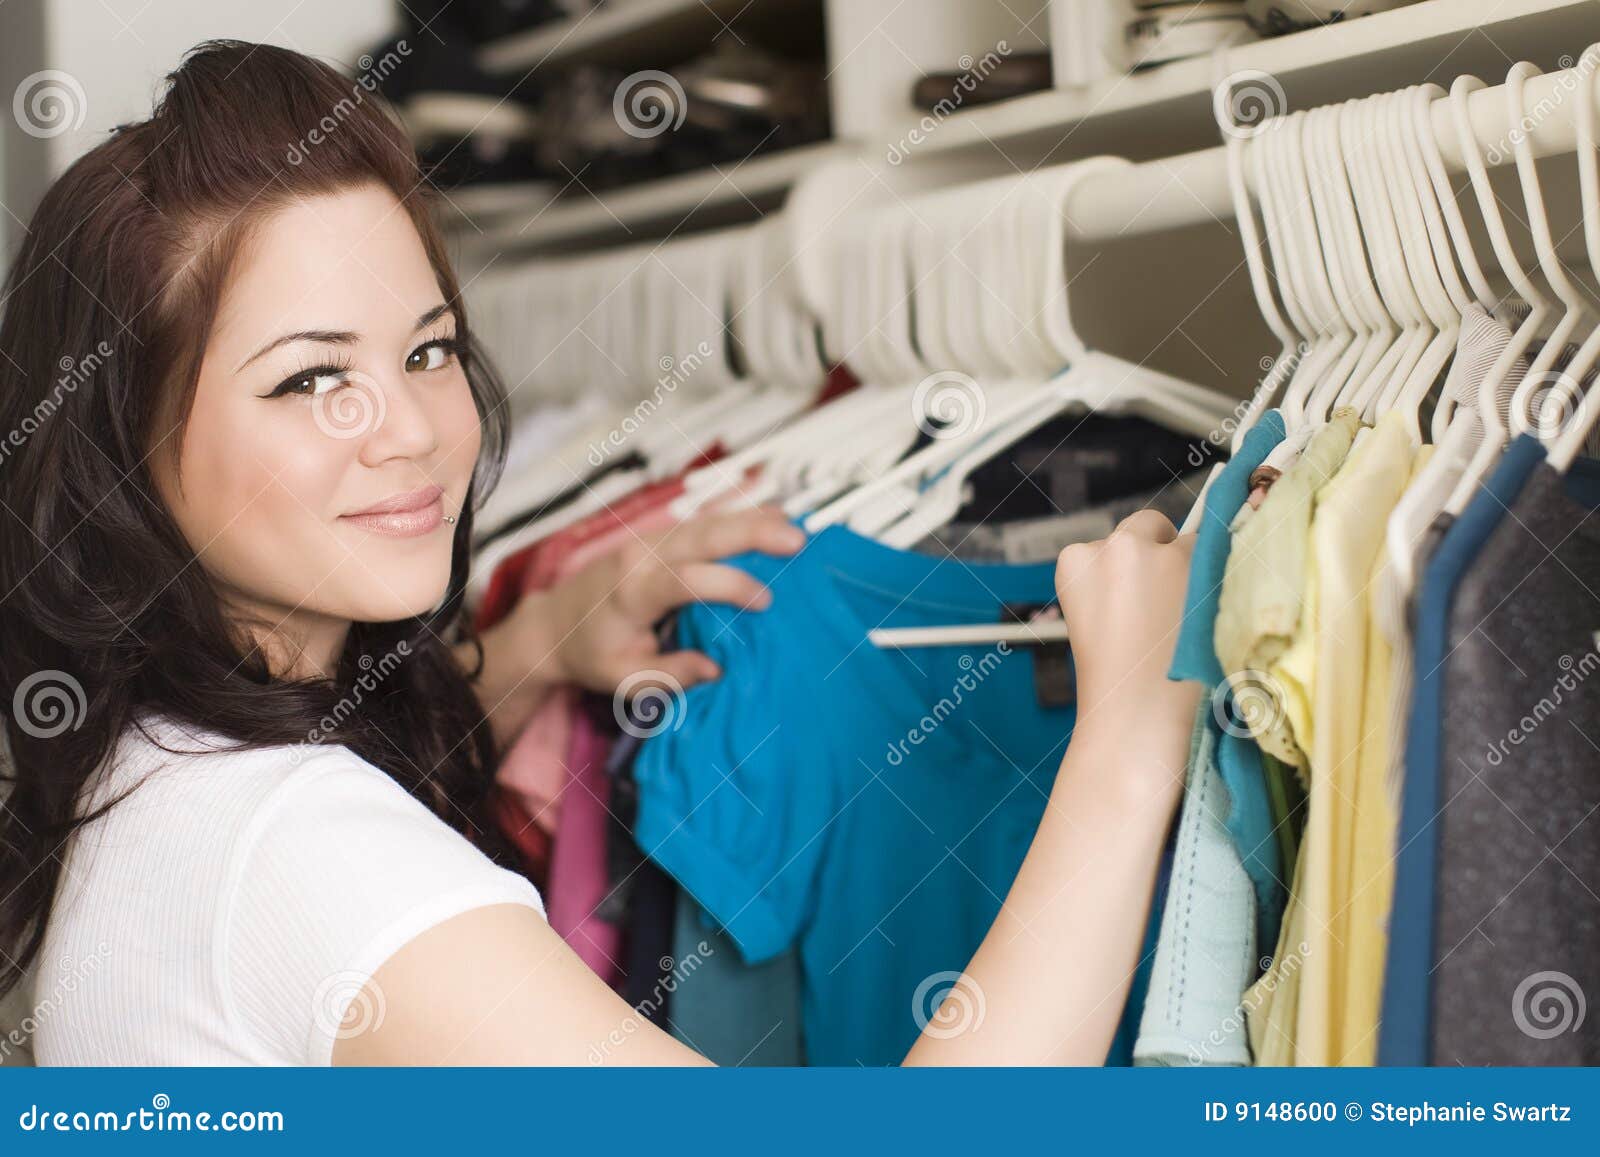 clothes in closet